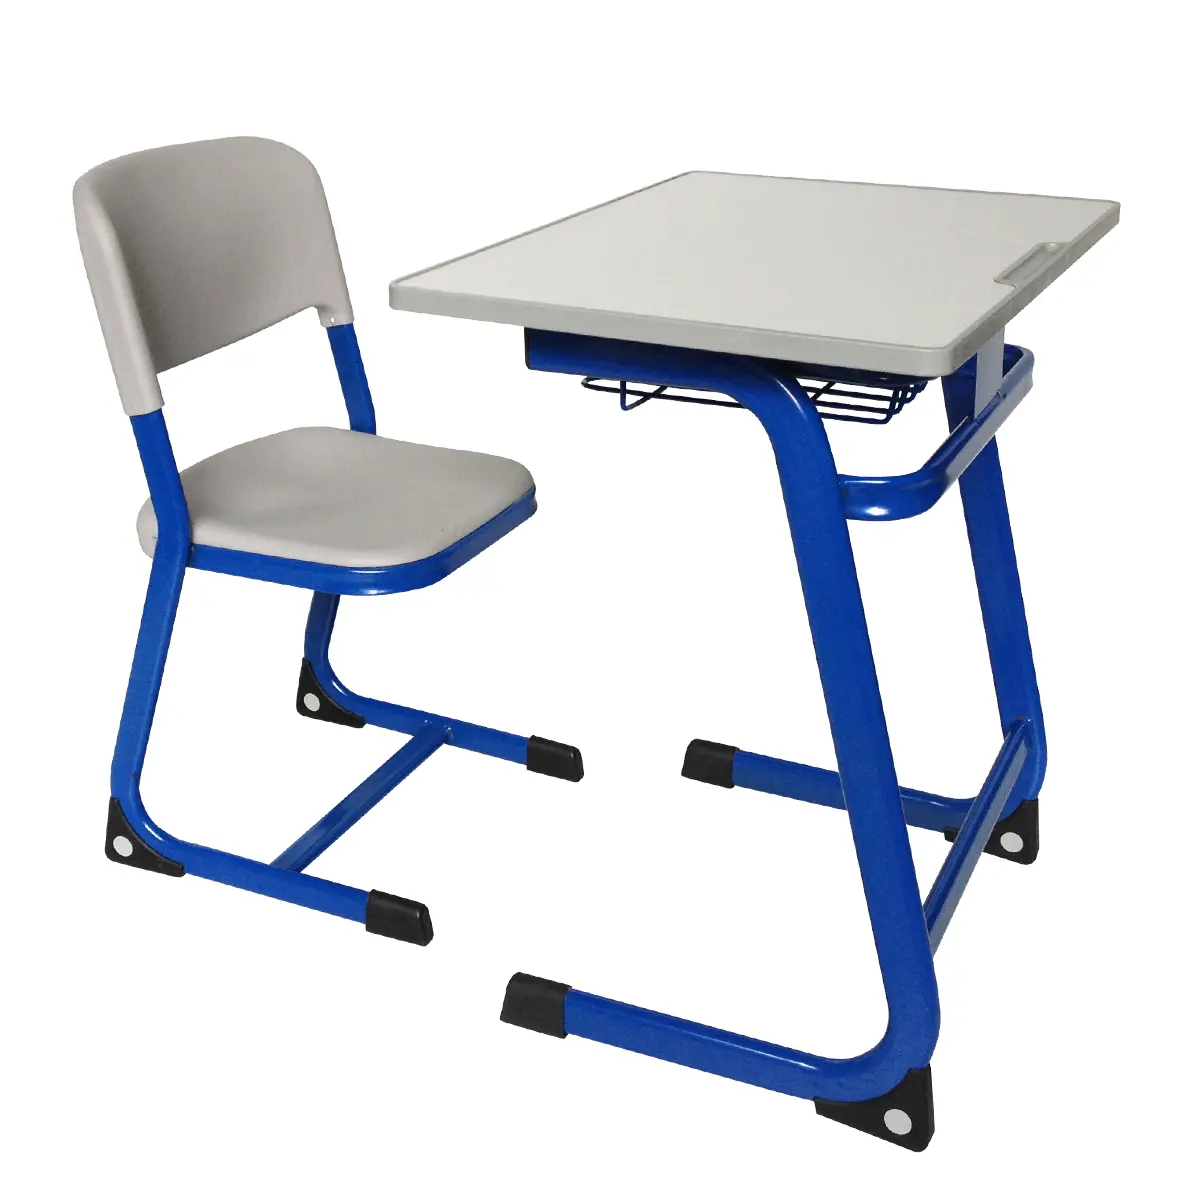 Ergonomique table d'étude et chaise mobilier scolaire bureau étudiant et chaise